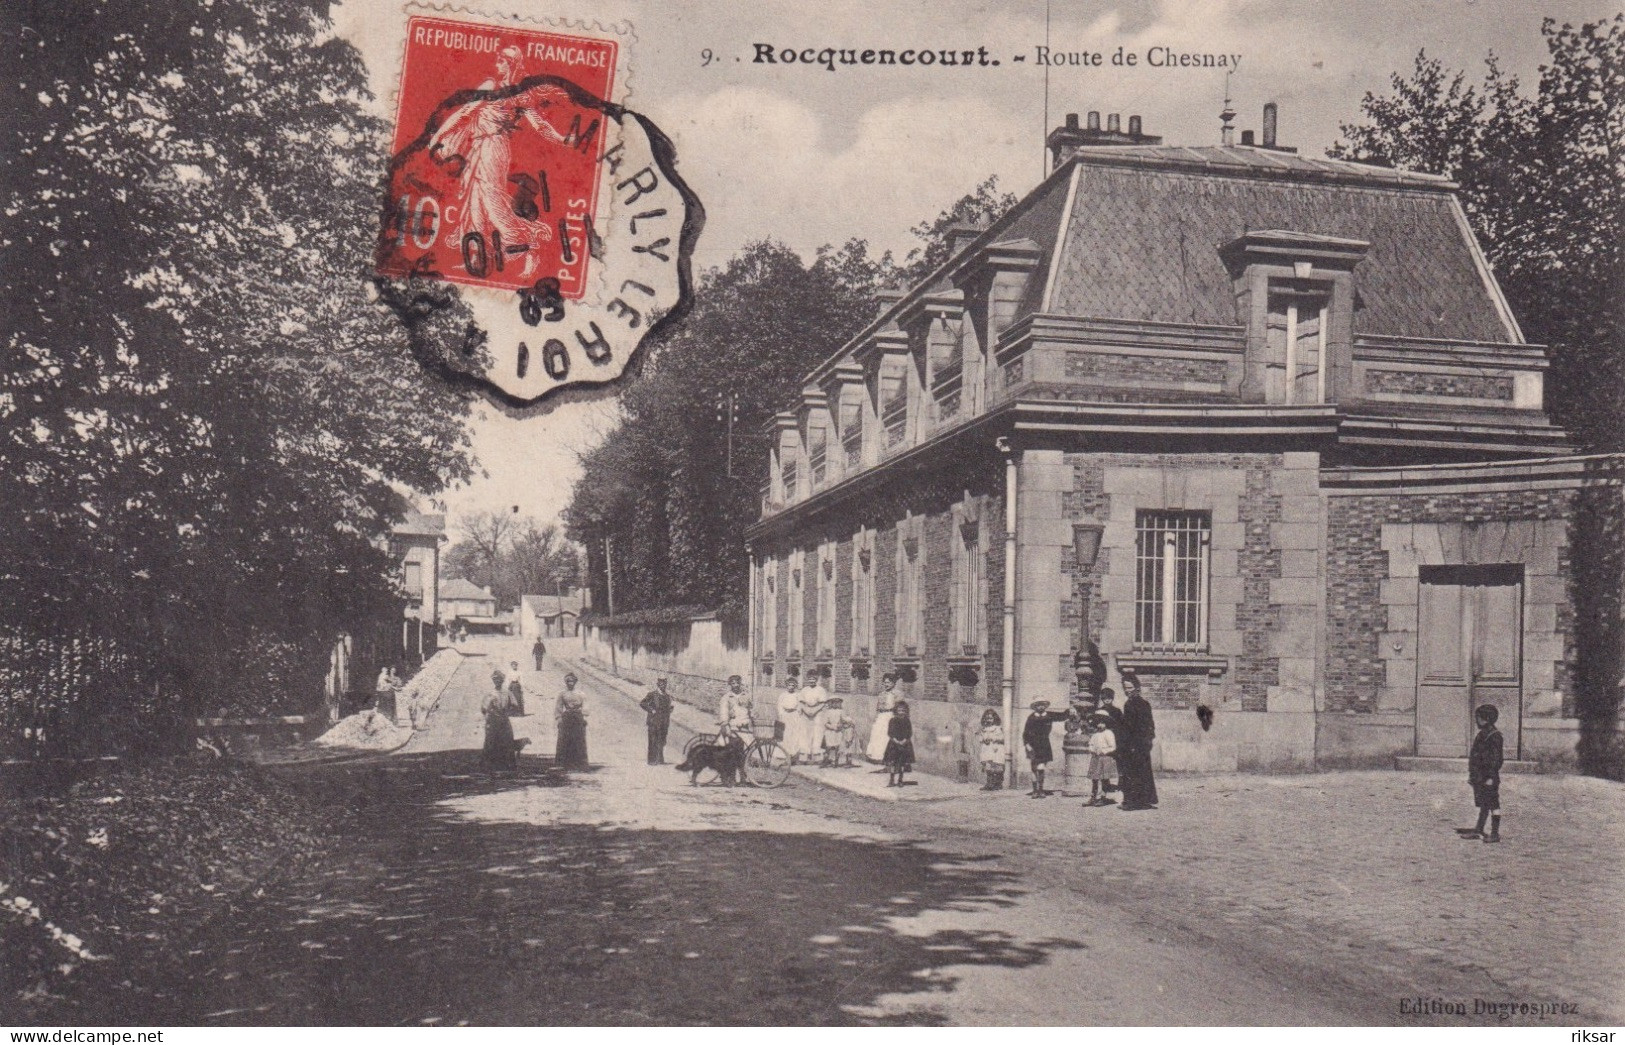 ROQUENCOURT - Rocquencourt